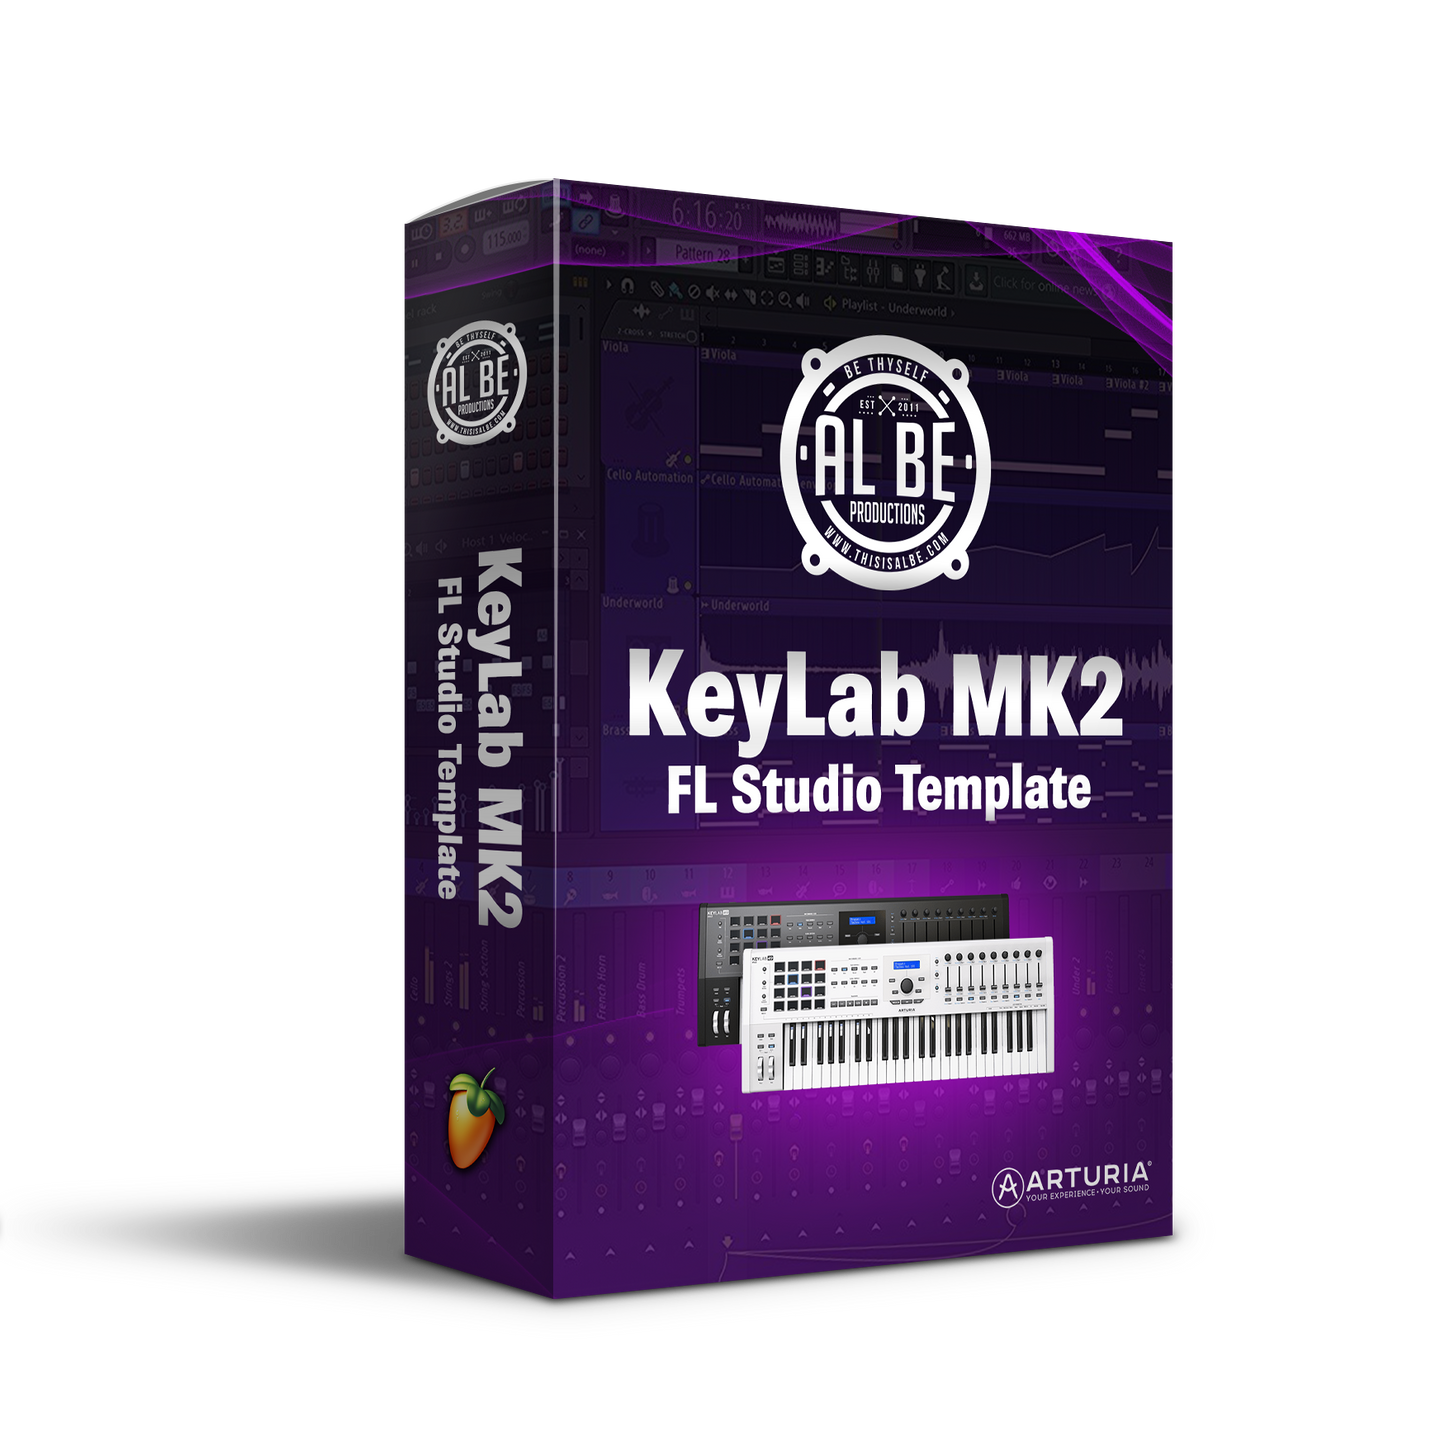 Keylab MK2 FL Studio Template